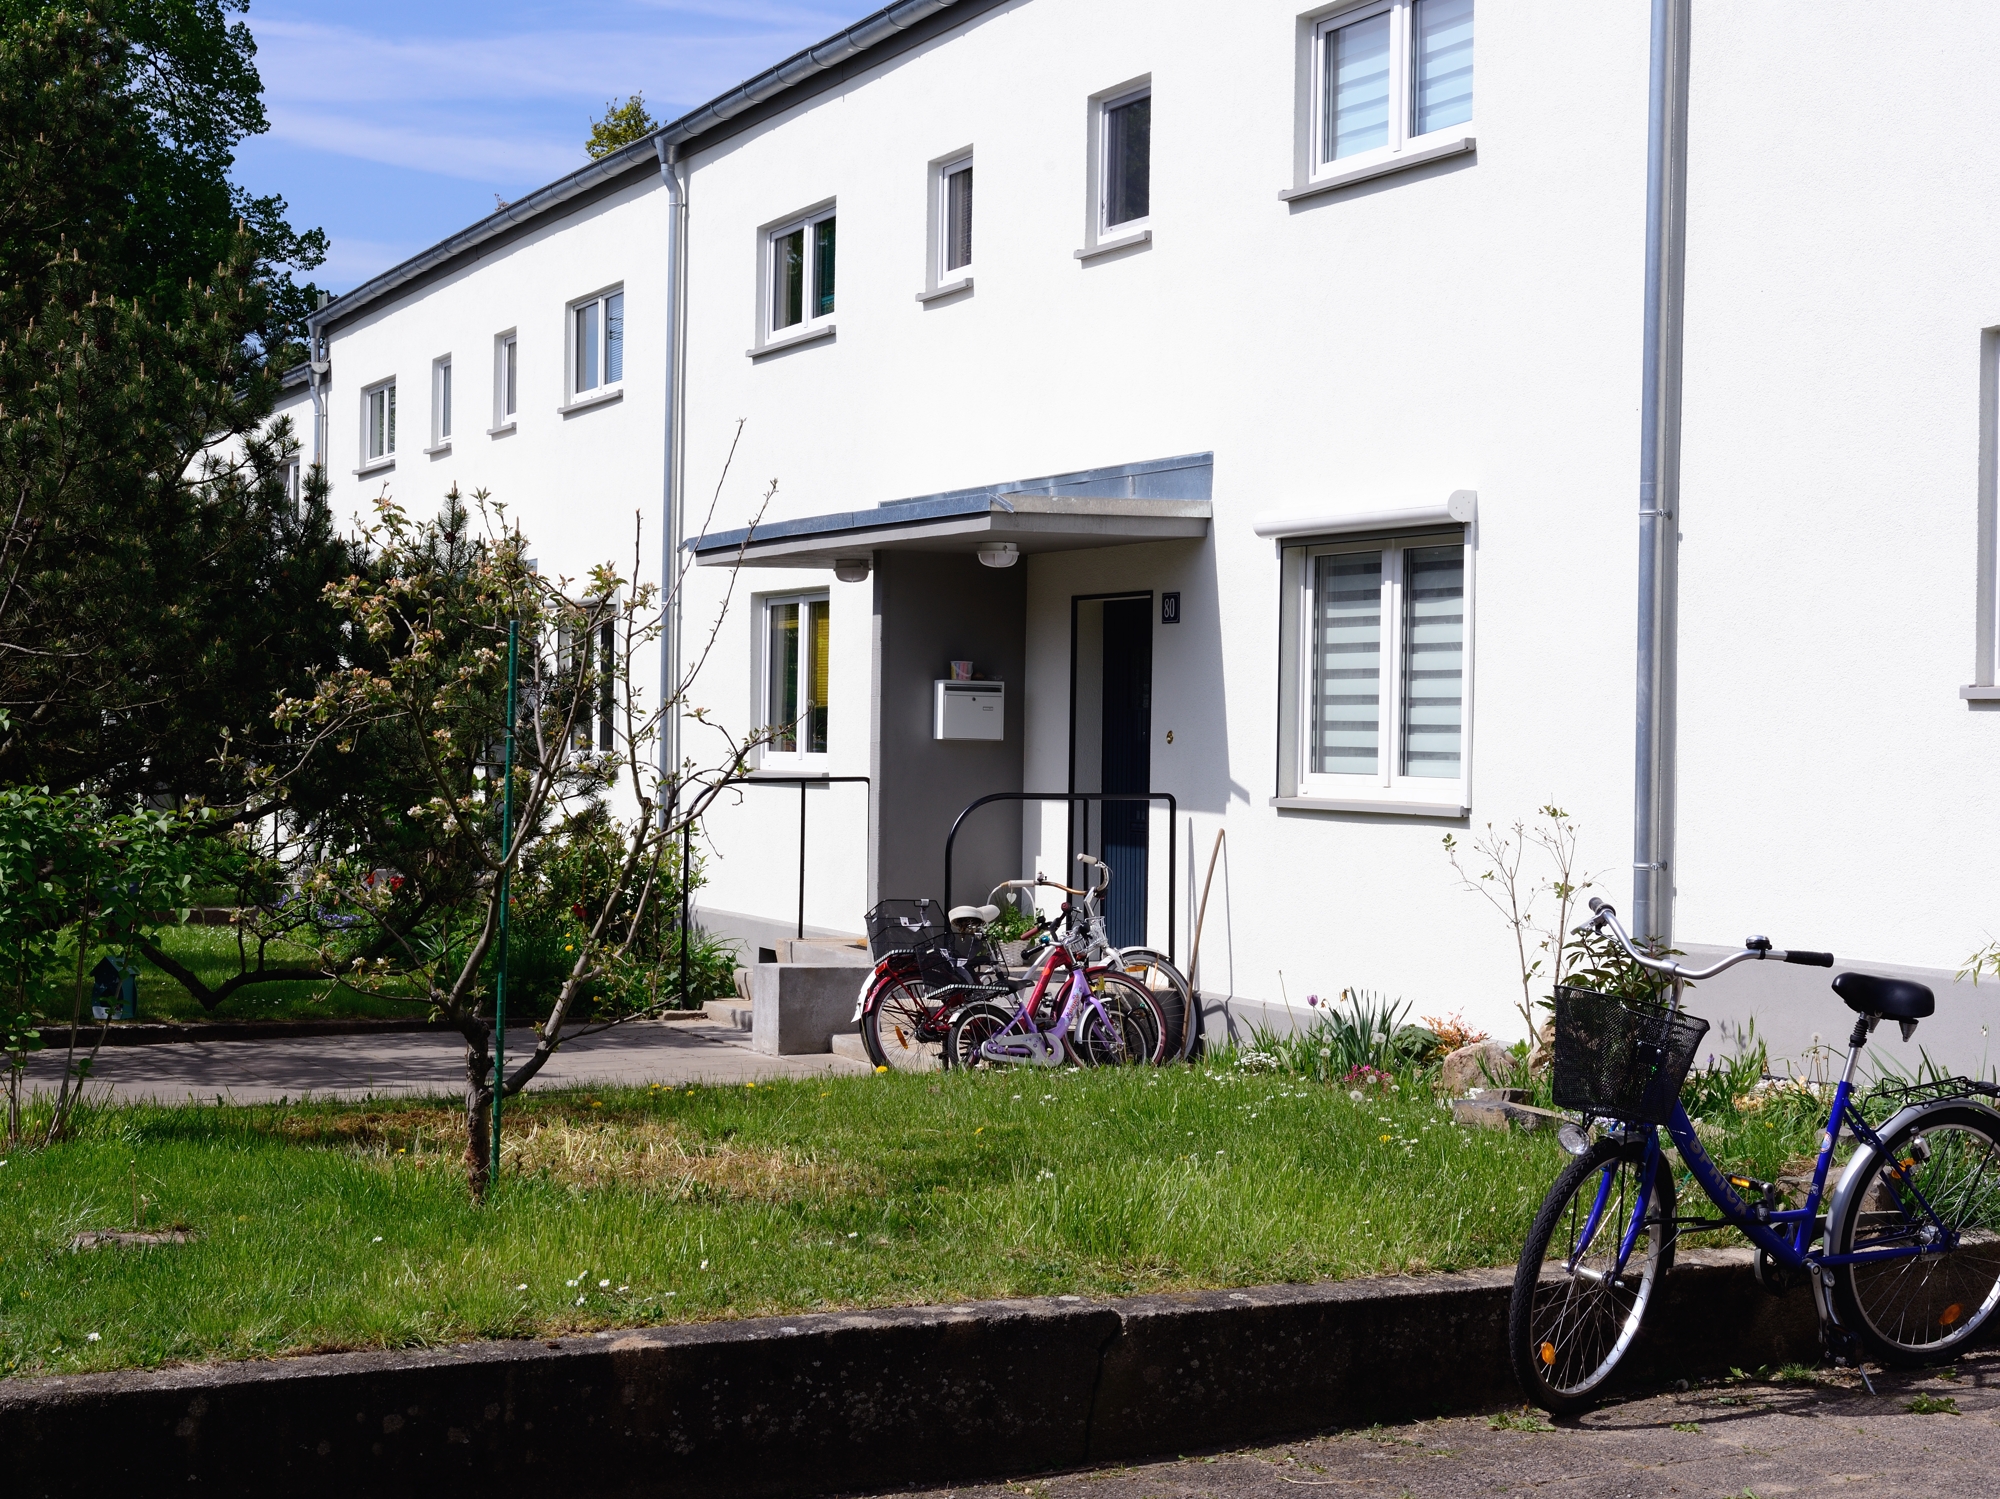 Ernst May housing in Römerstadt